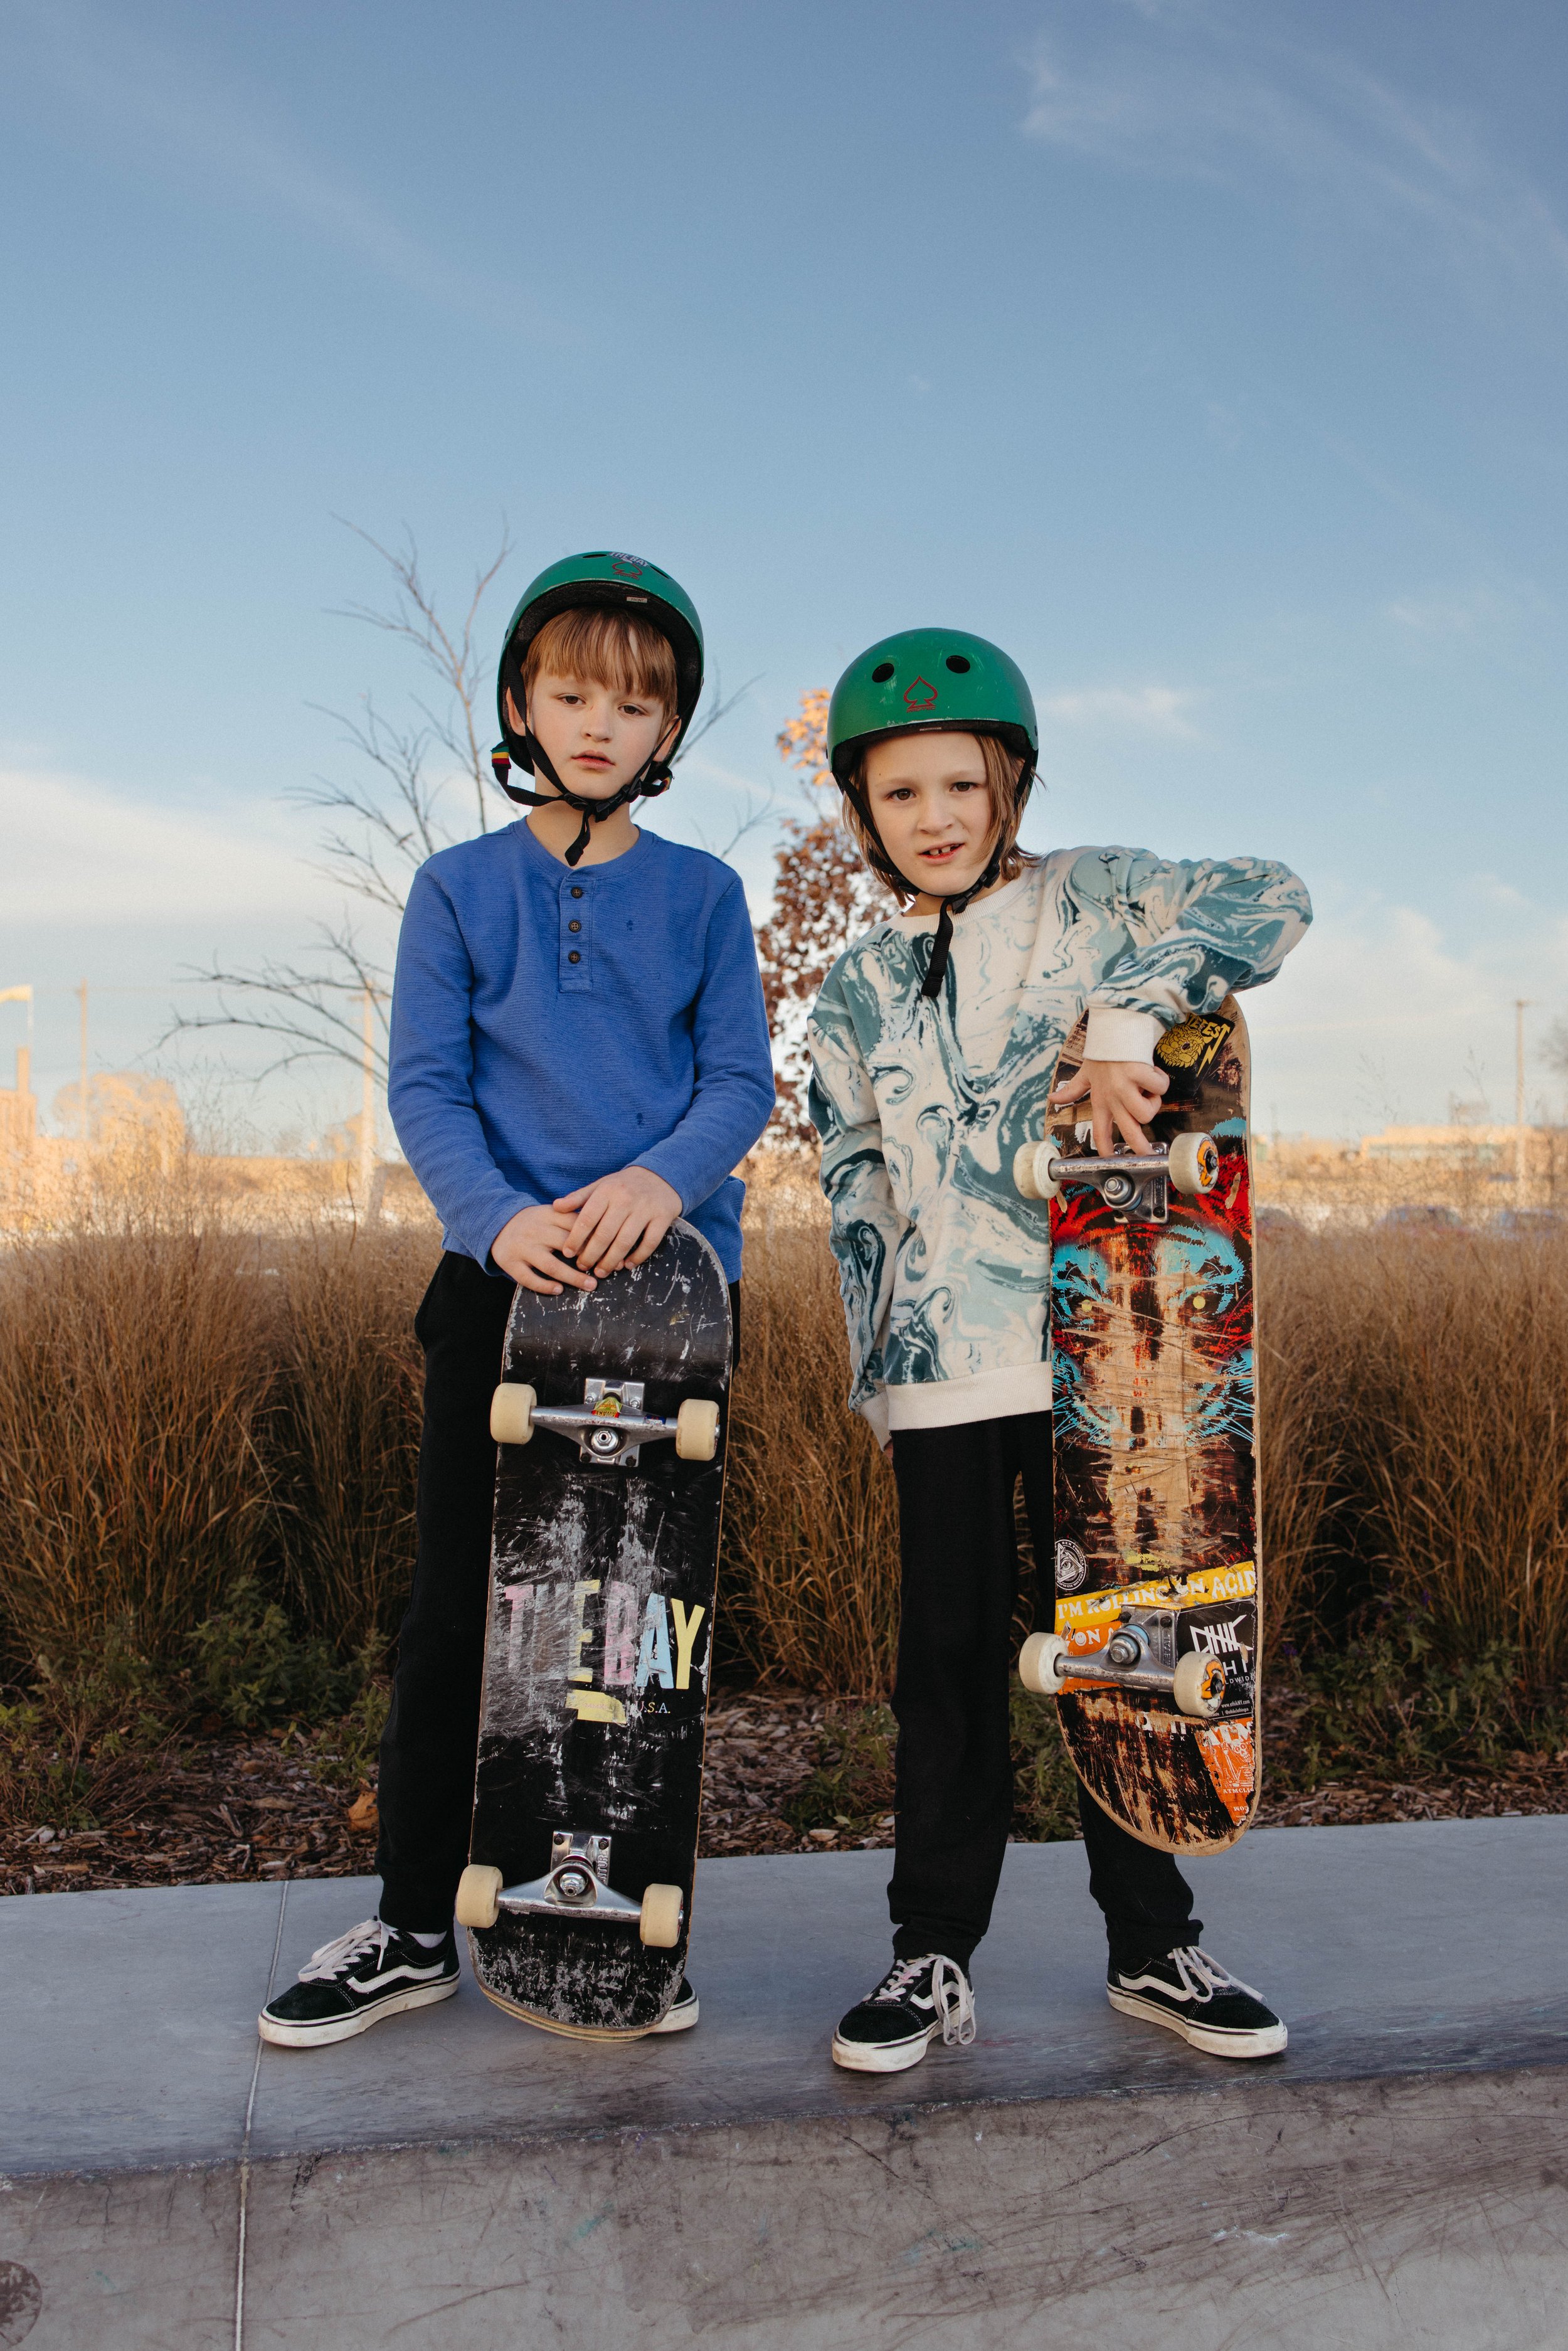 skate-park-family-session-web-res-104.jpg